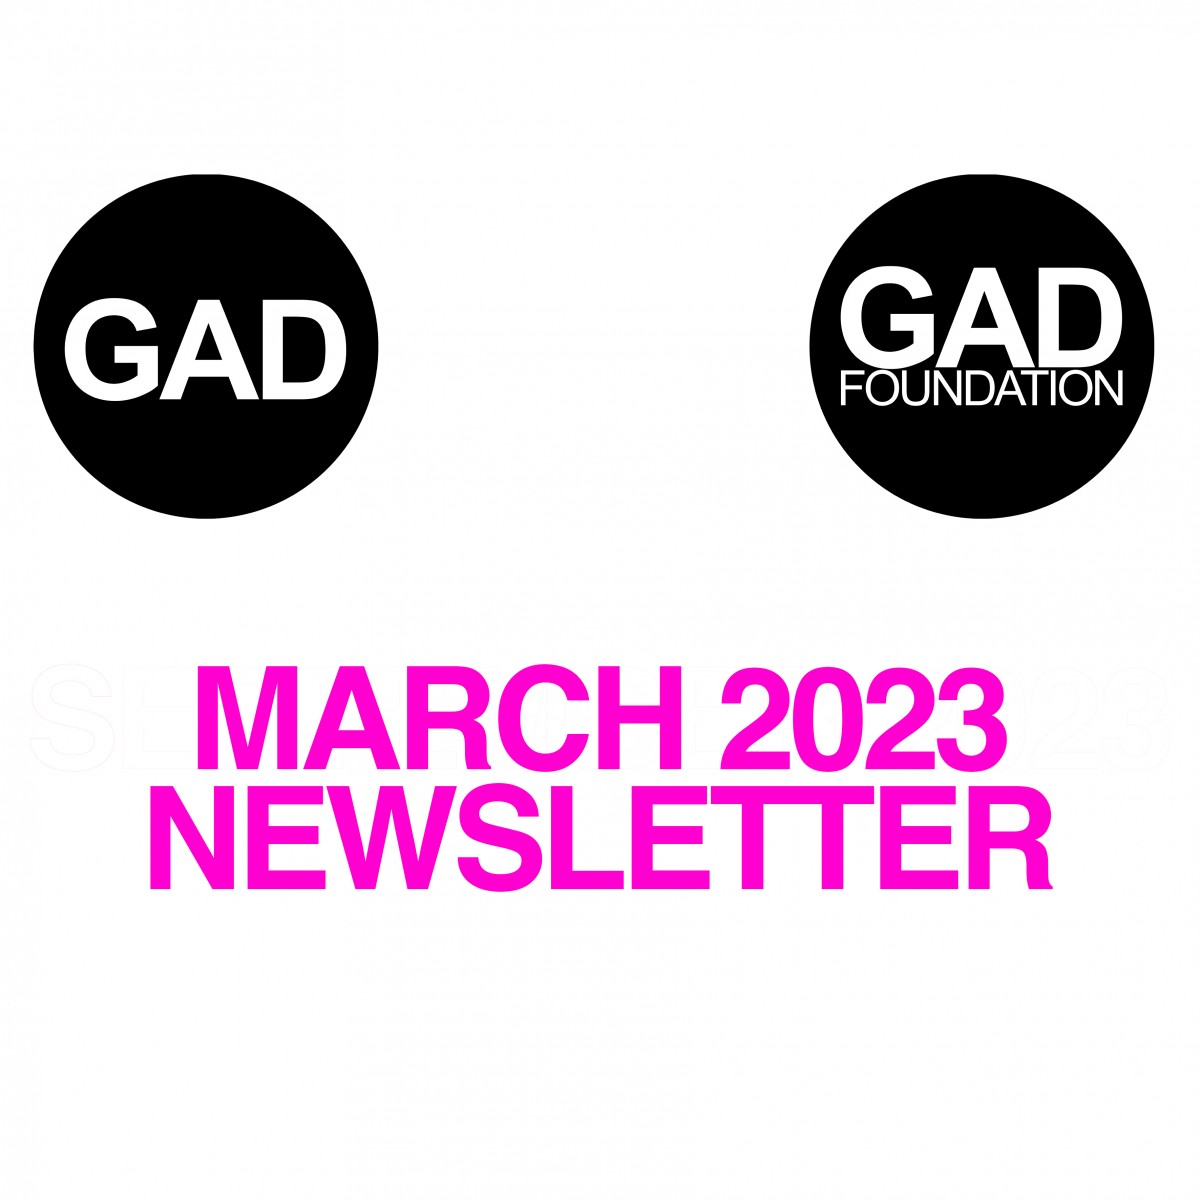 Mart 2023 Newsletter